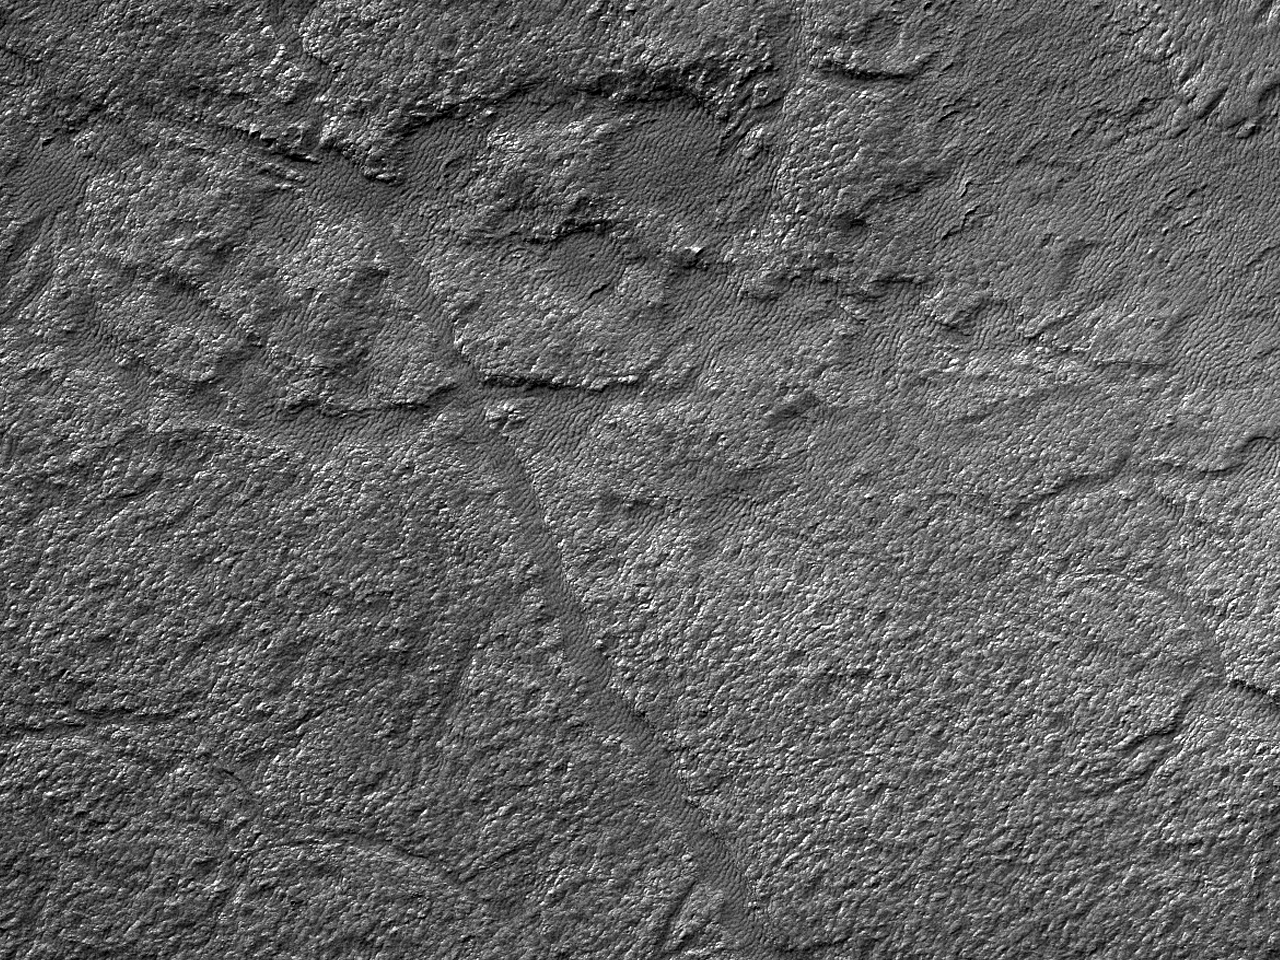 ریخت شناسی کف دهانه «لیوت» (Lyot Crater)